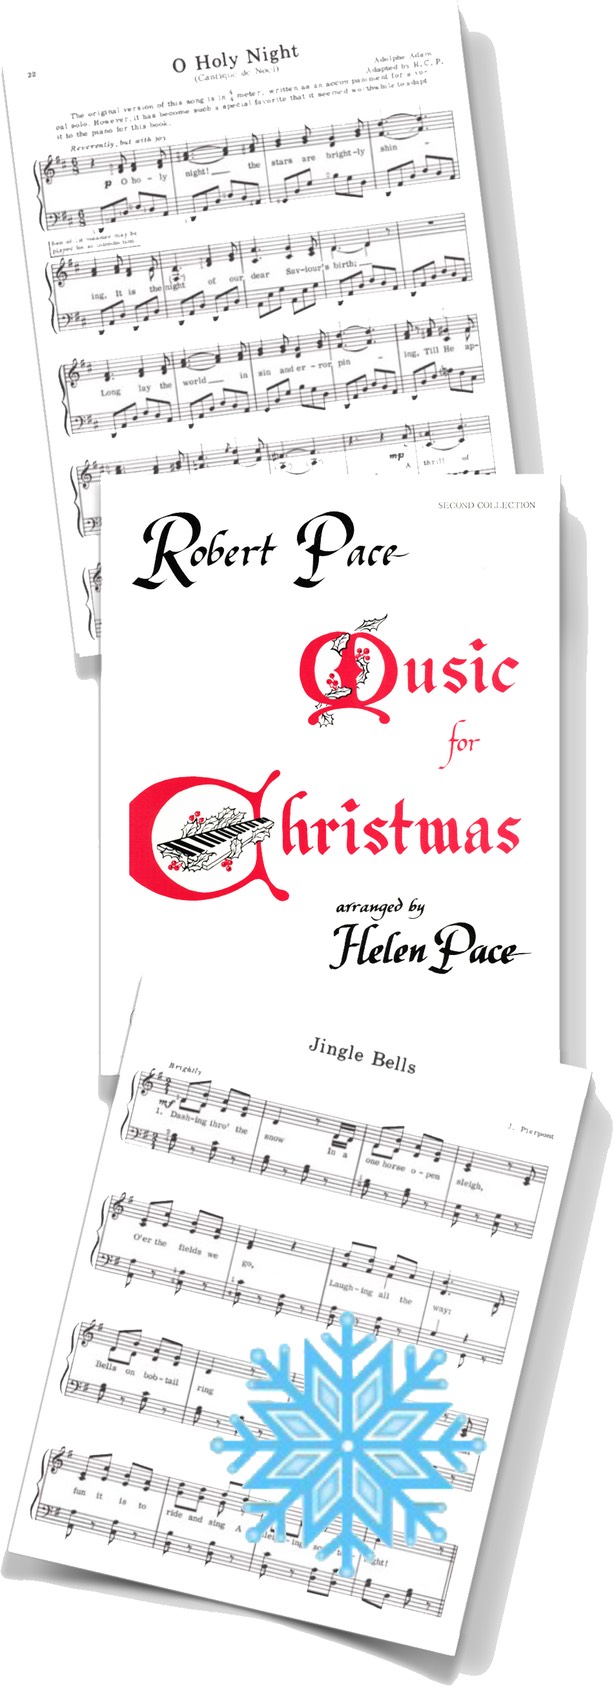 Music for Christmas  O Holy Night 